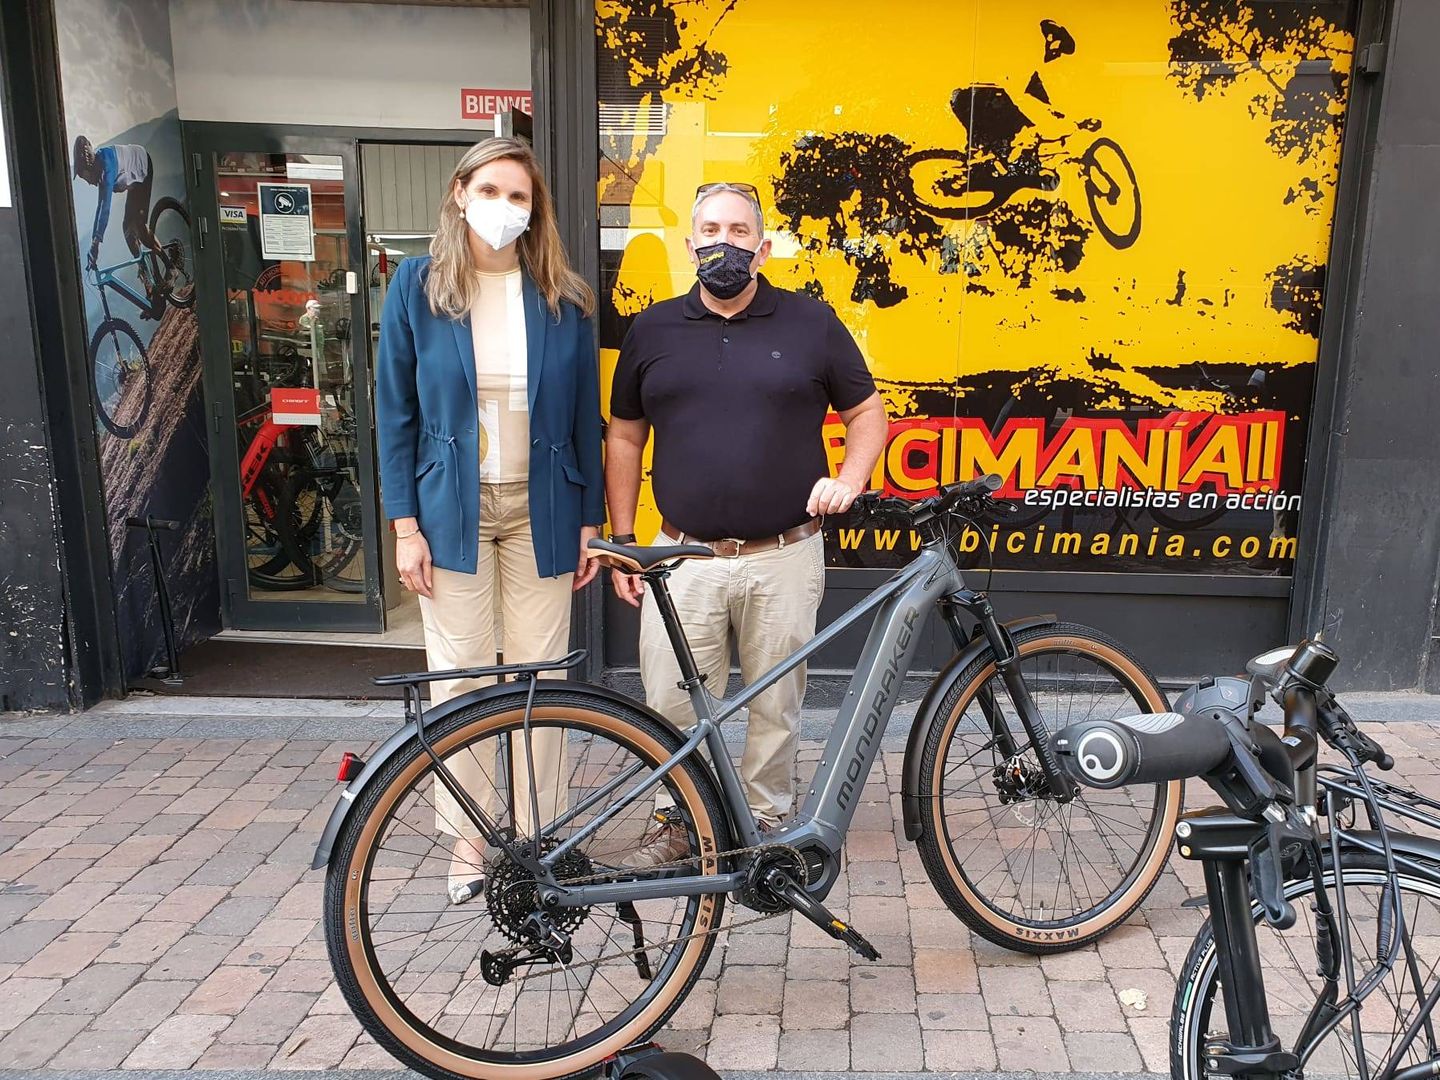 La consejera de Medio Ambiente, Paloma Martín, junto a Juan Ochoa, responsable del informe técnico de las ayudas. El plan se presentó en una tienda de bicicletas como apoyo al comercio de proximidad.